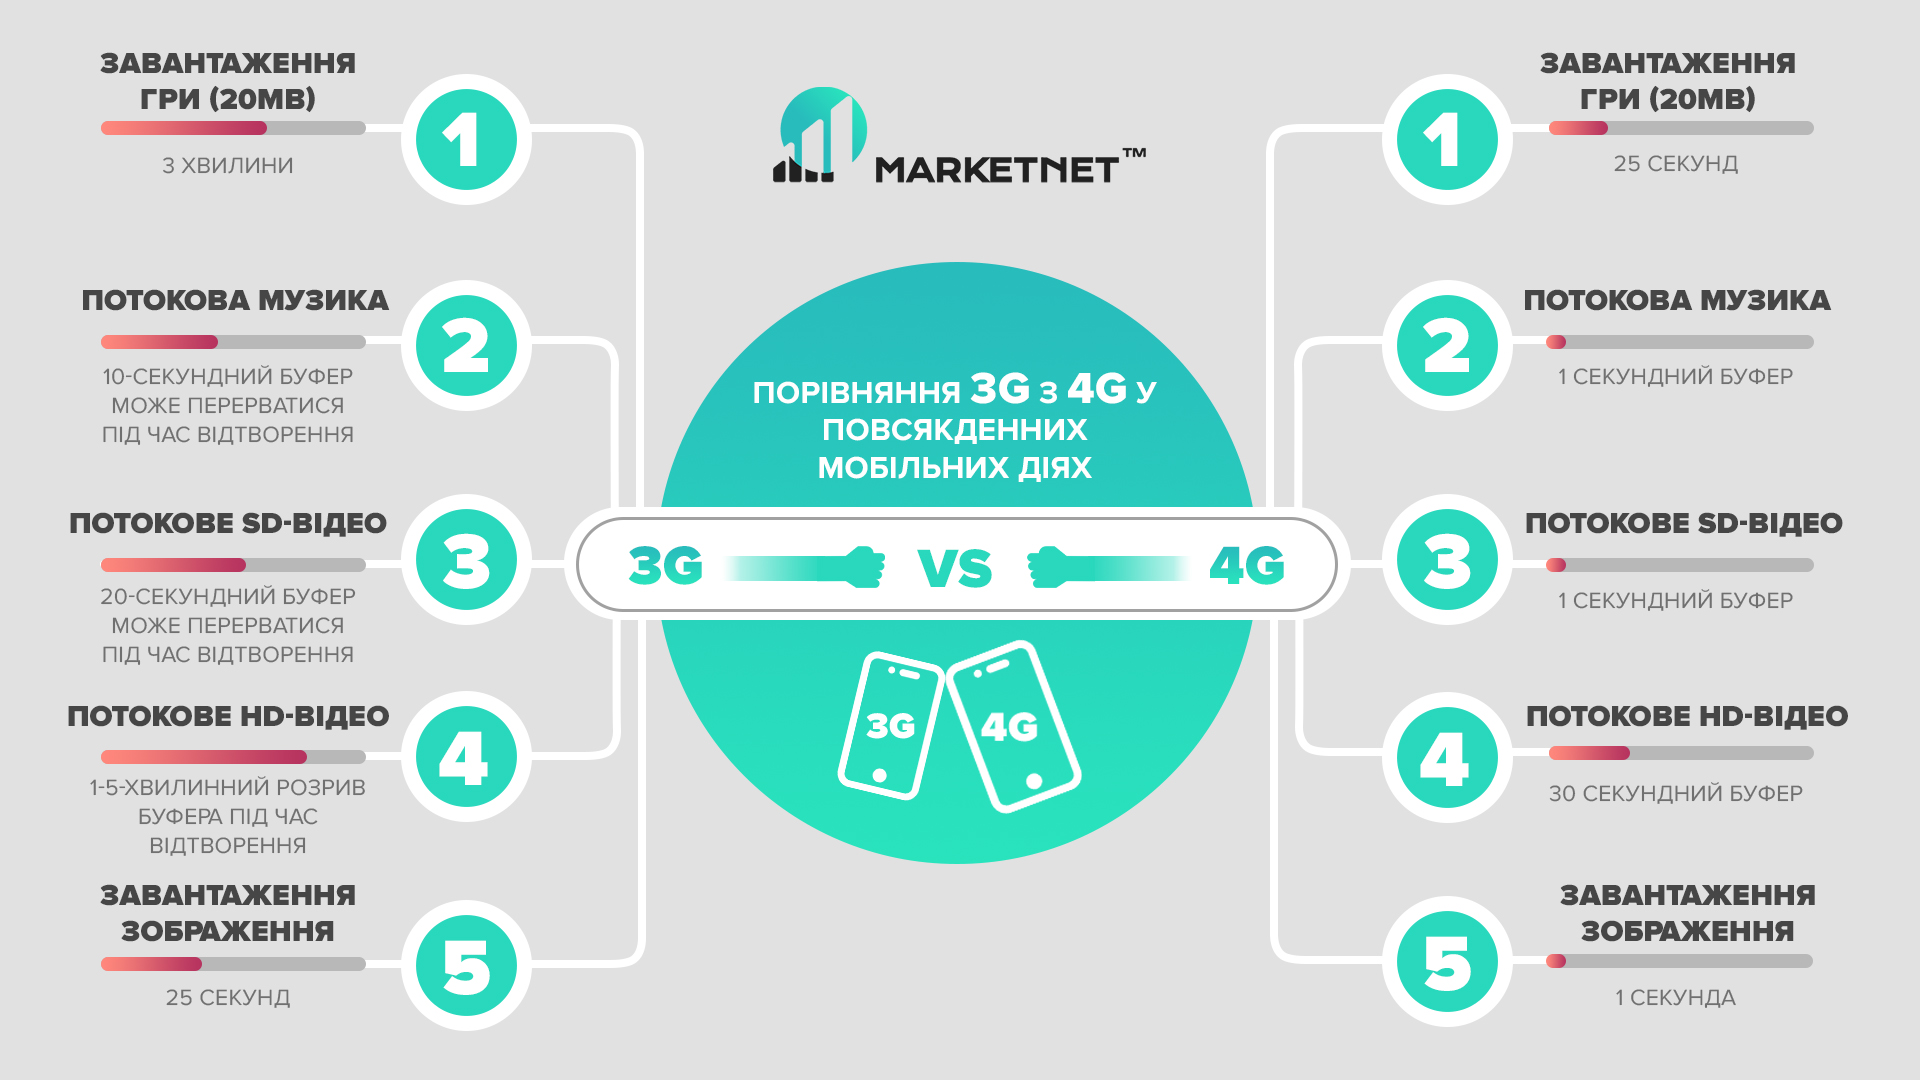 Порівняння 3G і 4G на Marketnet. Різниця у швидкості завантаження 3G vs 4G: завантаження ігри, потокова музика, потокове SD-відео, потокове HD-відео, завантаження зображень